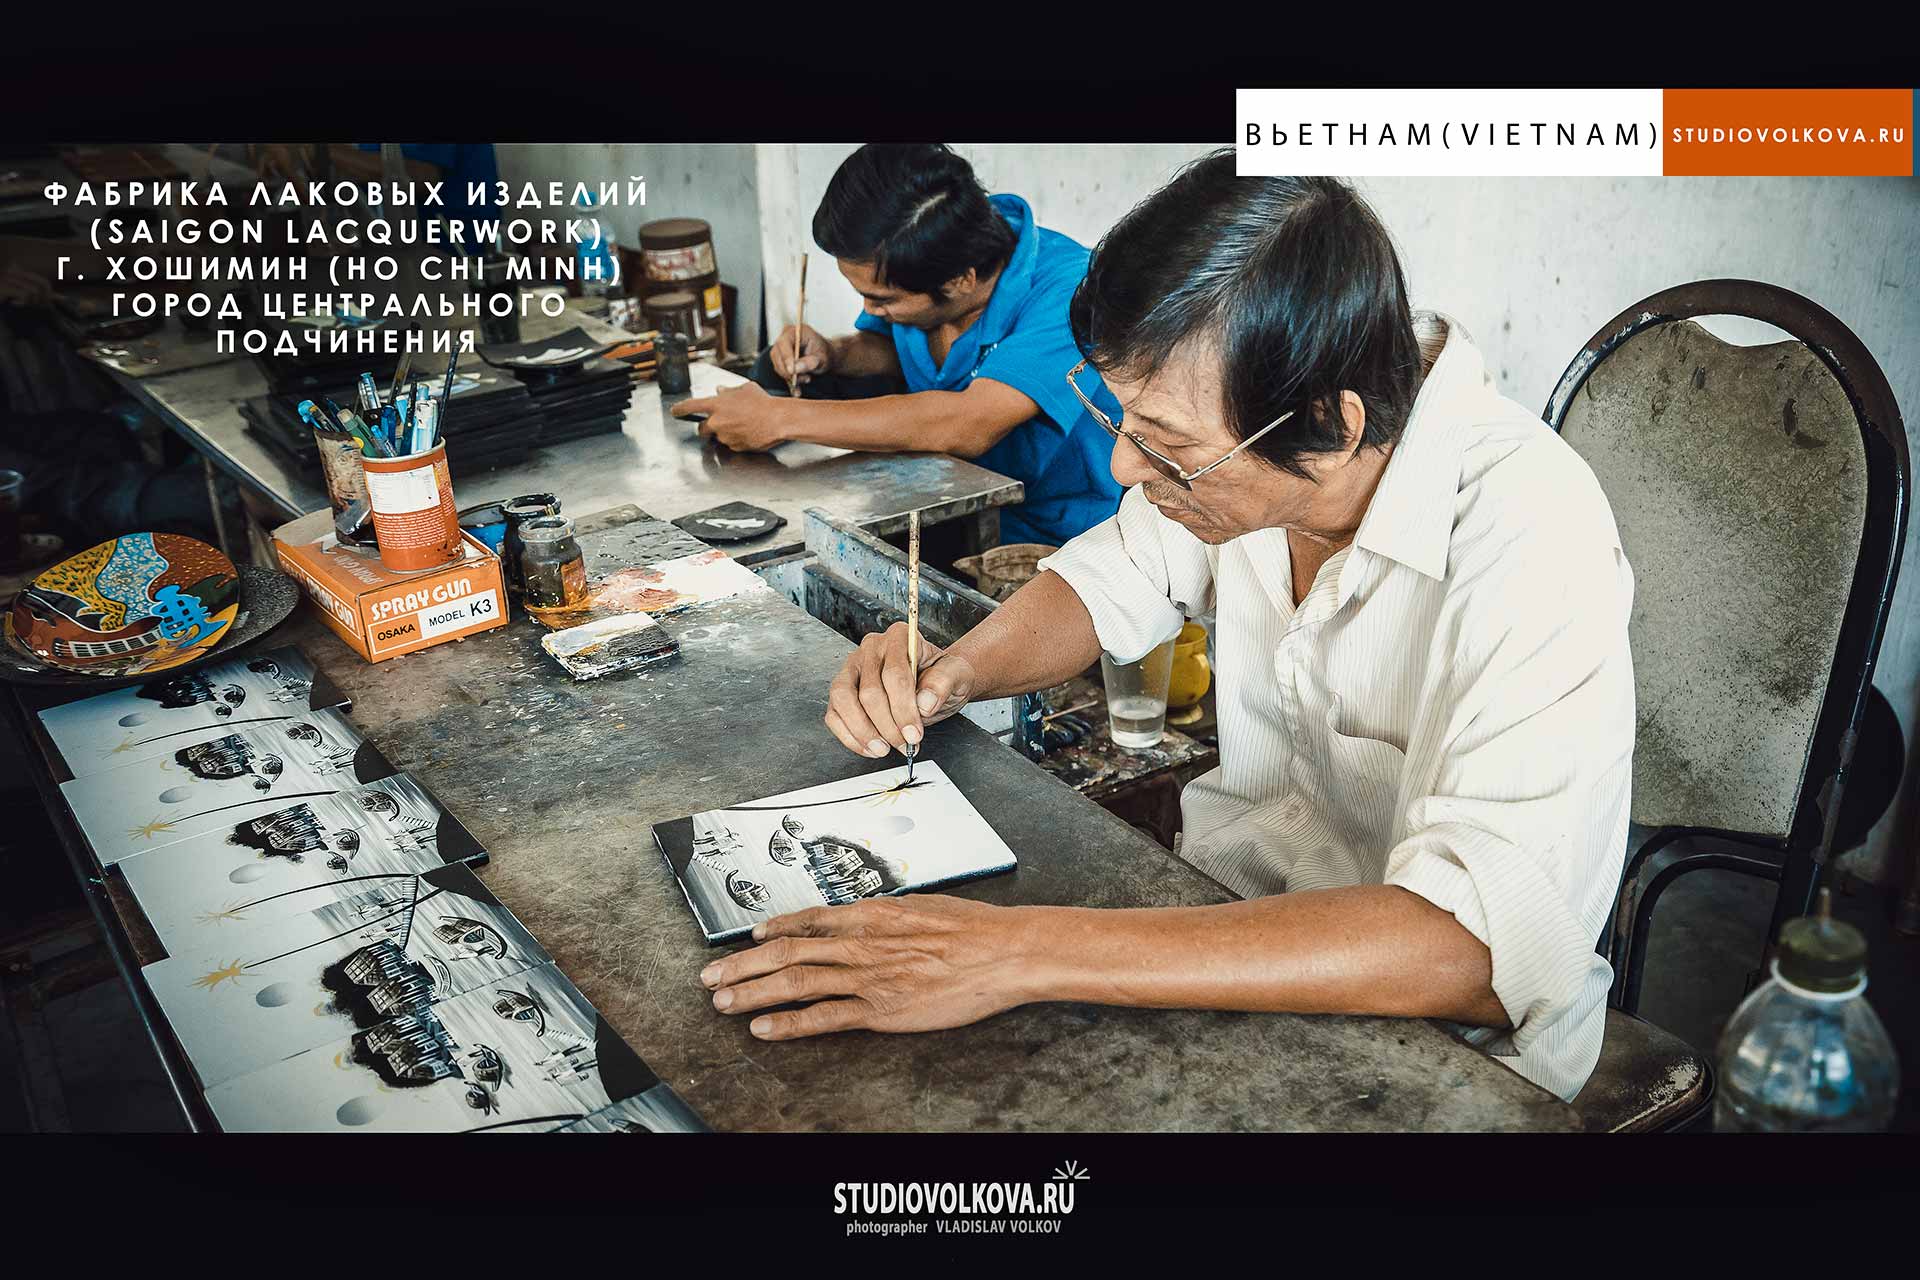 Фабрика лаковых изделий. г. Хошимин (Ho Chi Minh). фотограф Владислав ВОЛКОВ